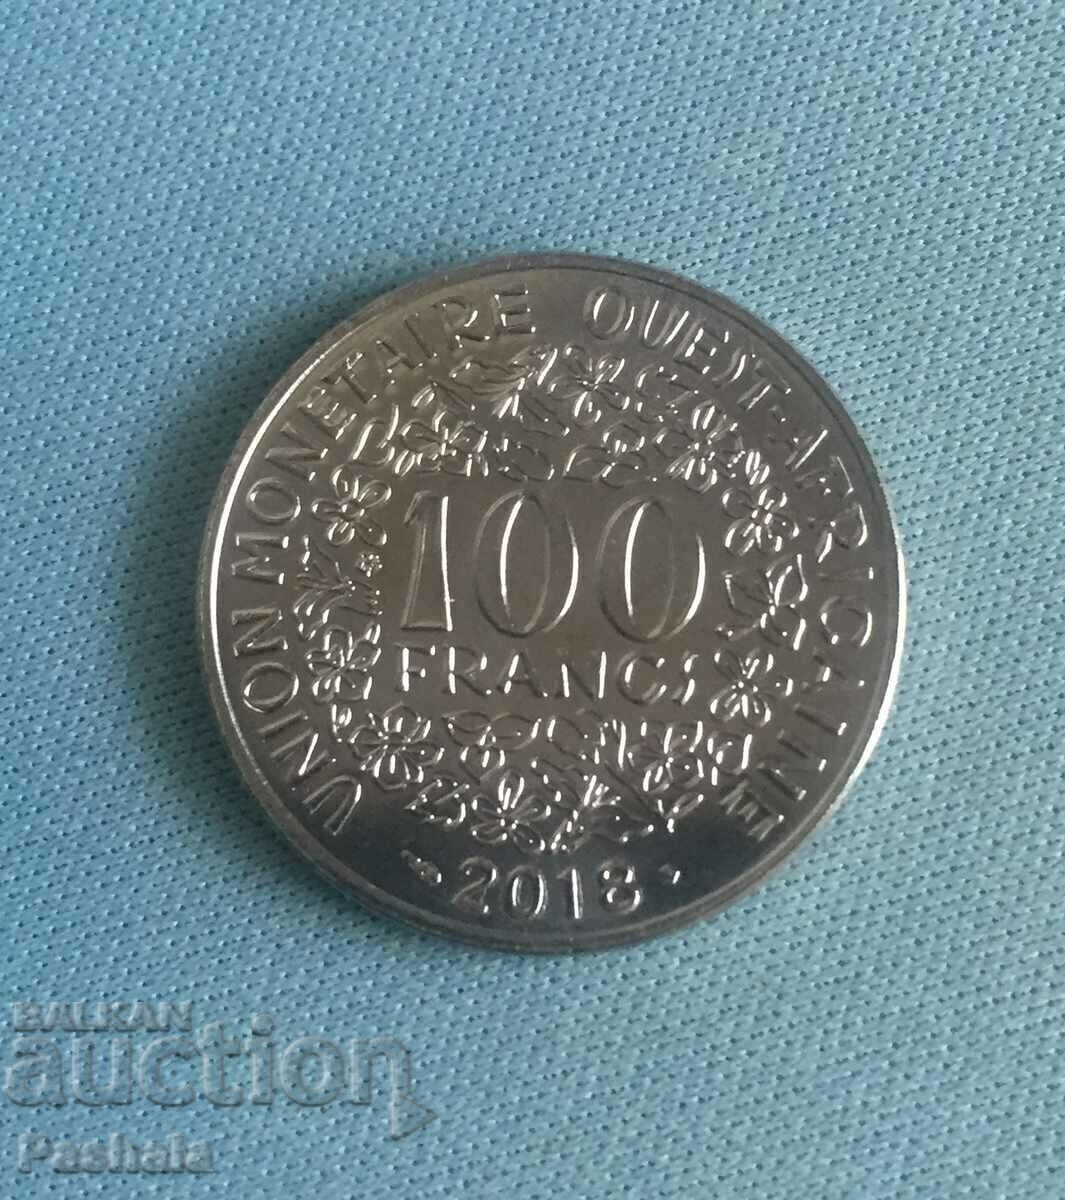 West Africa 100 francs 2017